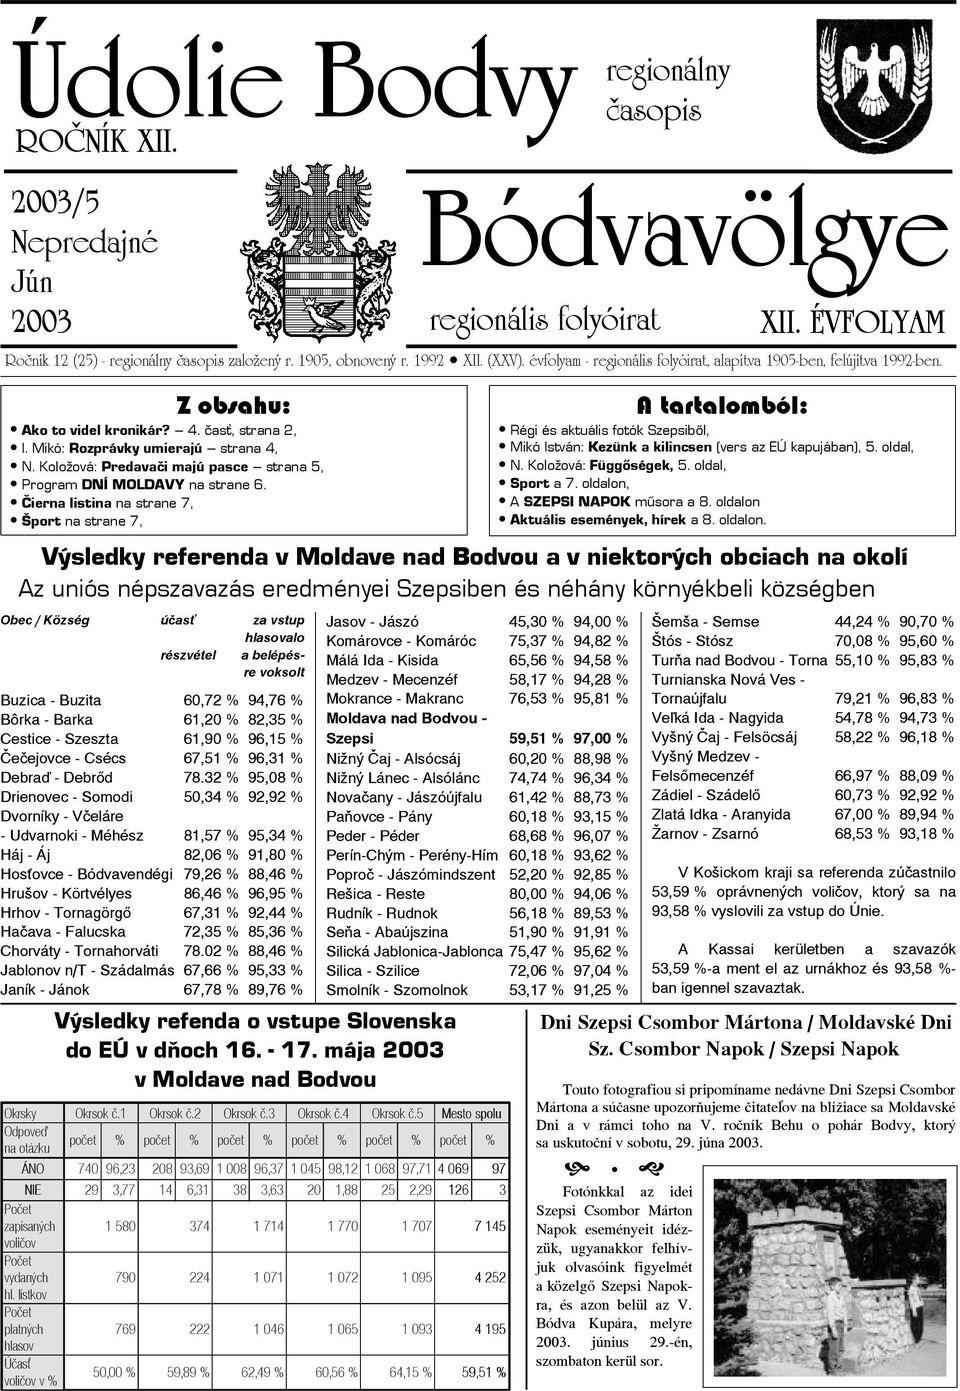 Koložová: Predavači majú pasce strana 5, Program DNÍ MOLDAVY na strane 6.